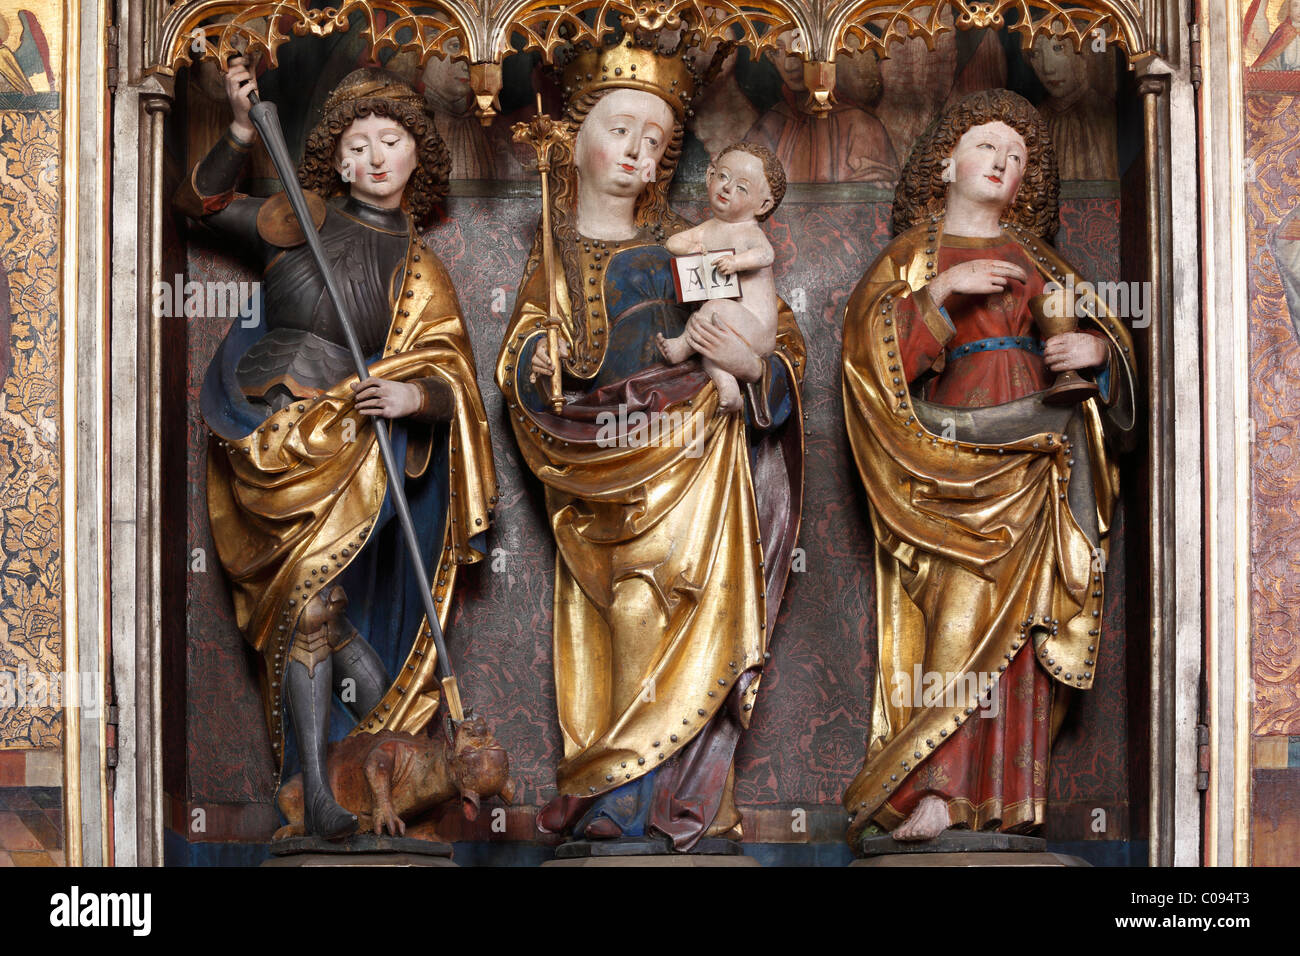 Dettaglio dell'altare della Madonna, evangelica chiesa parrocchiale di Langenzenn, Media Franconia, Franconia, Baviera, Germania, Europa Foto Stock